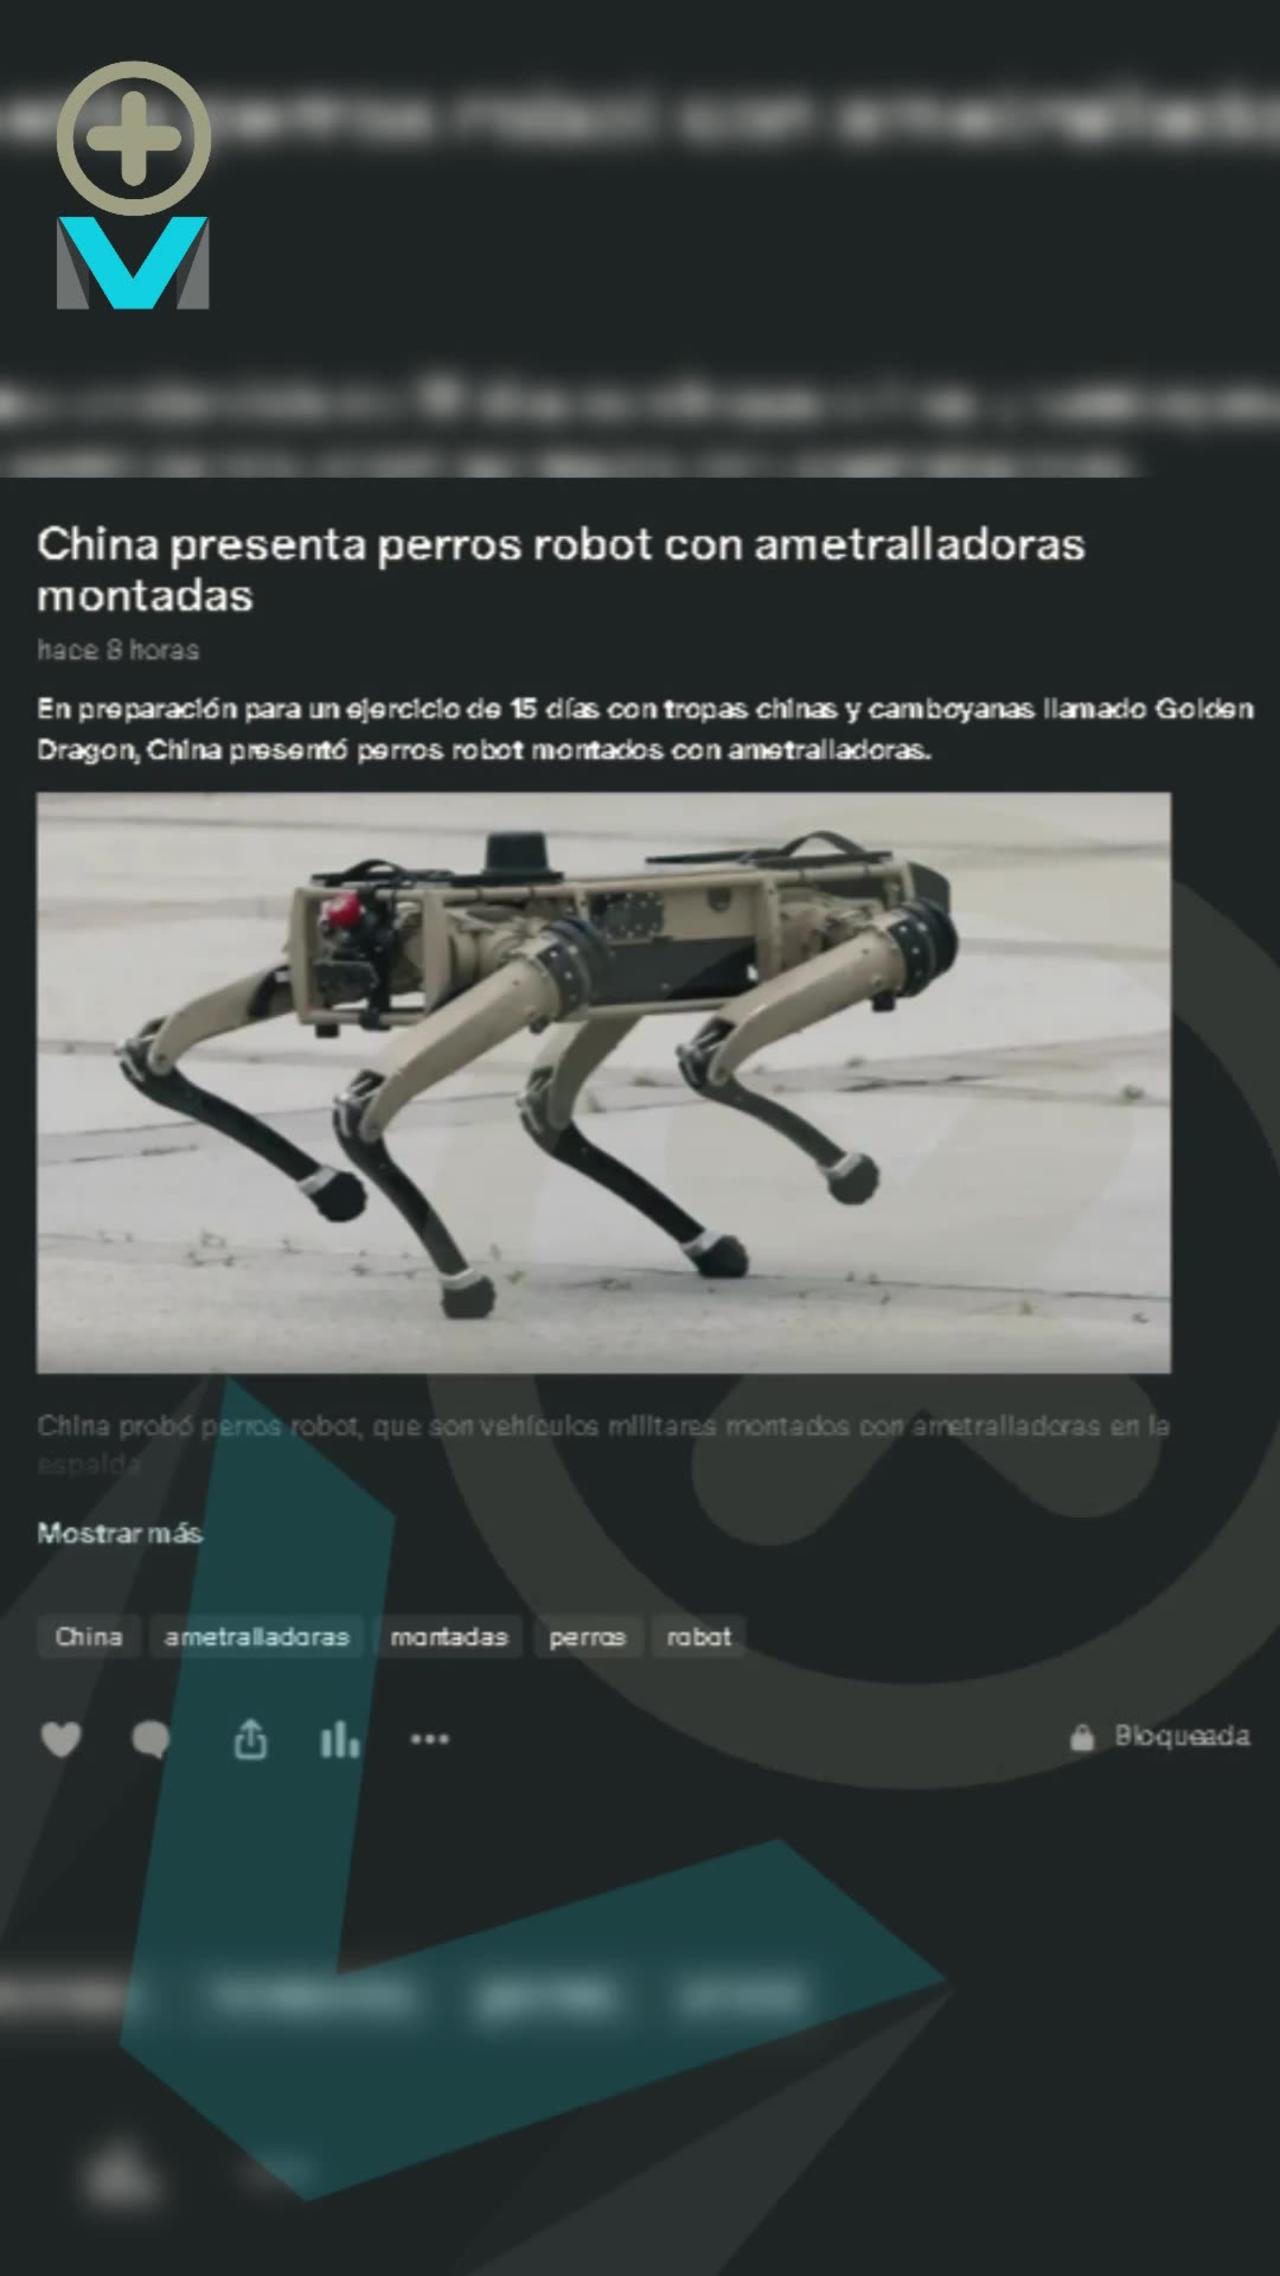 China presenta perros robot con ametralladoras montadas